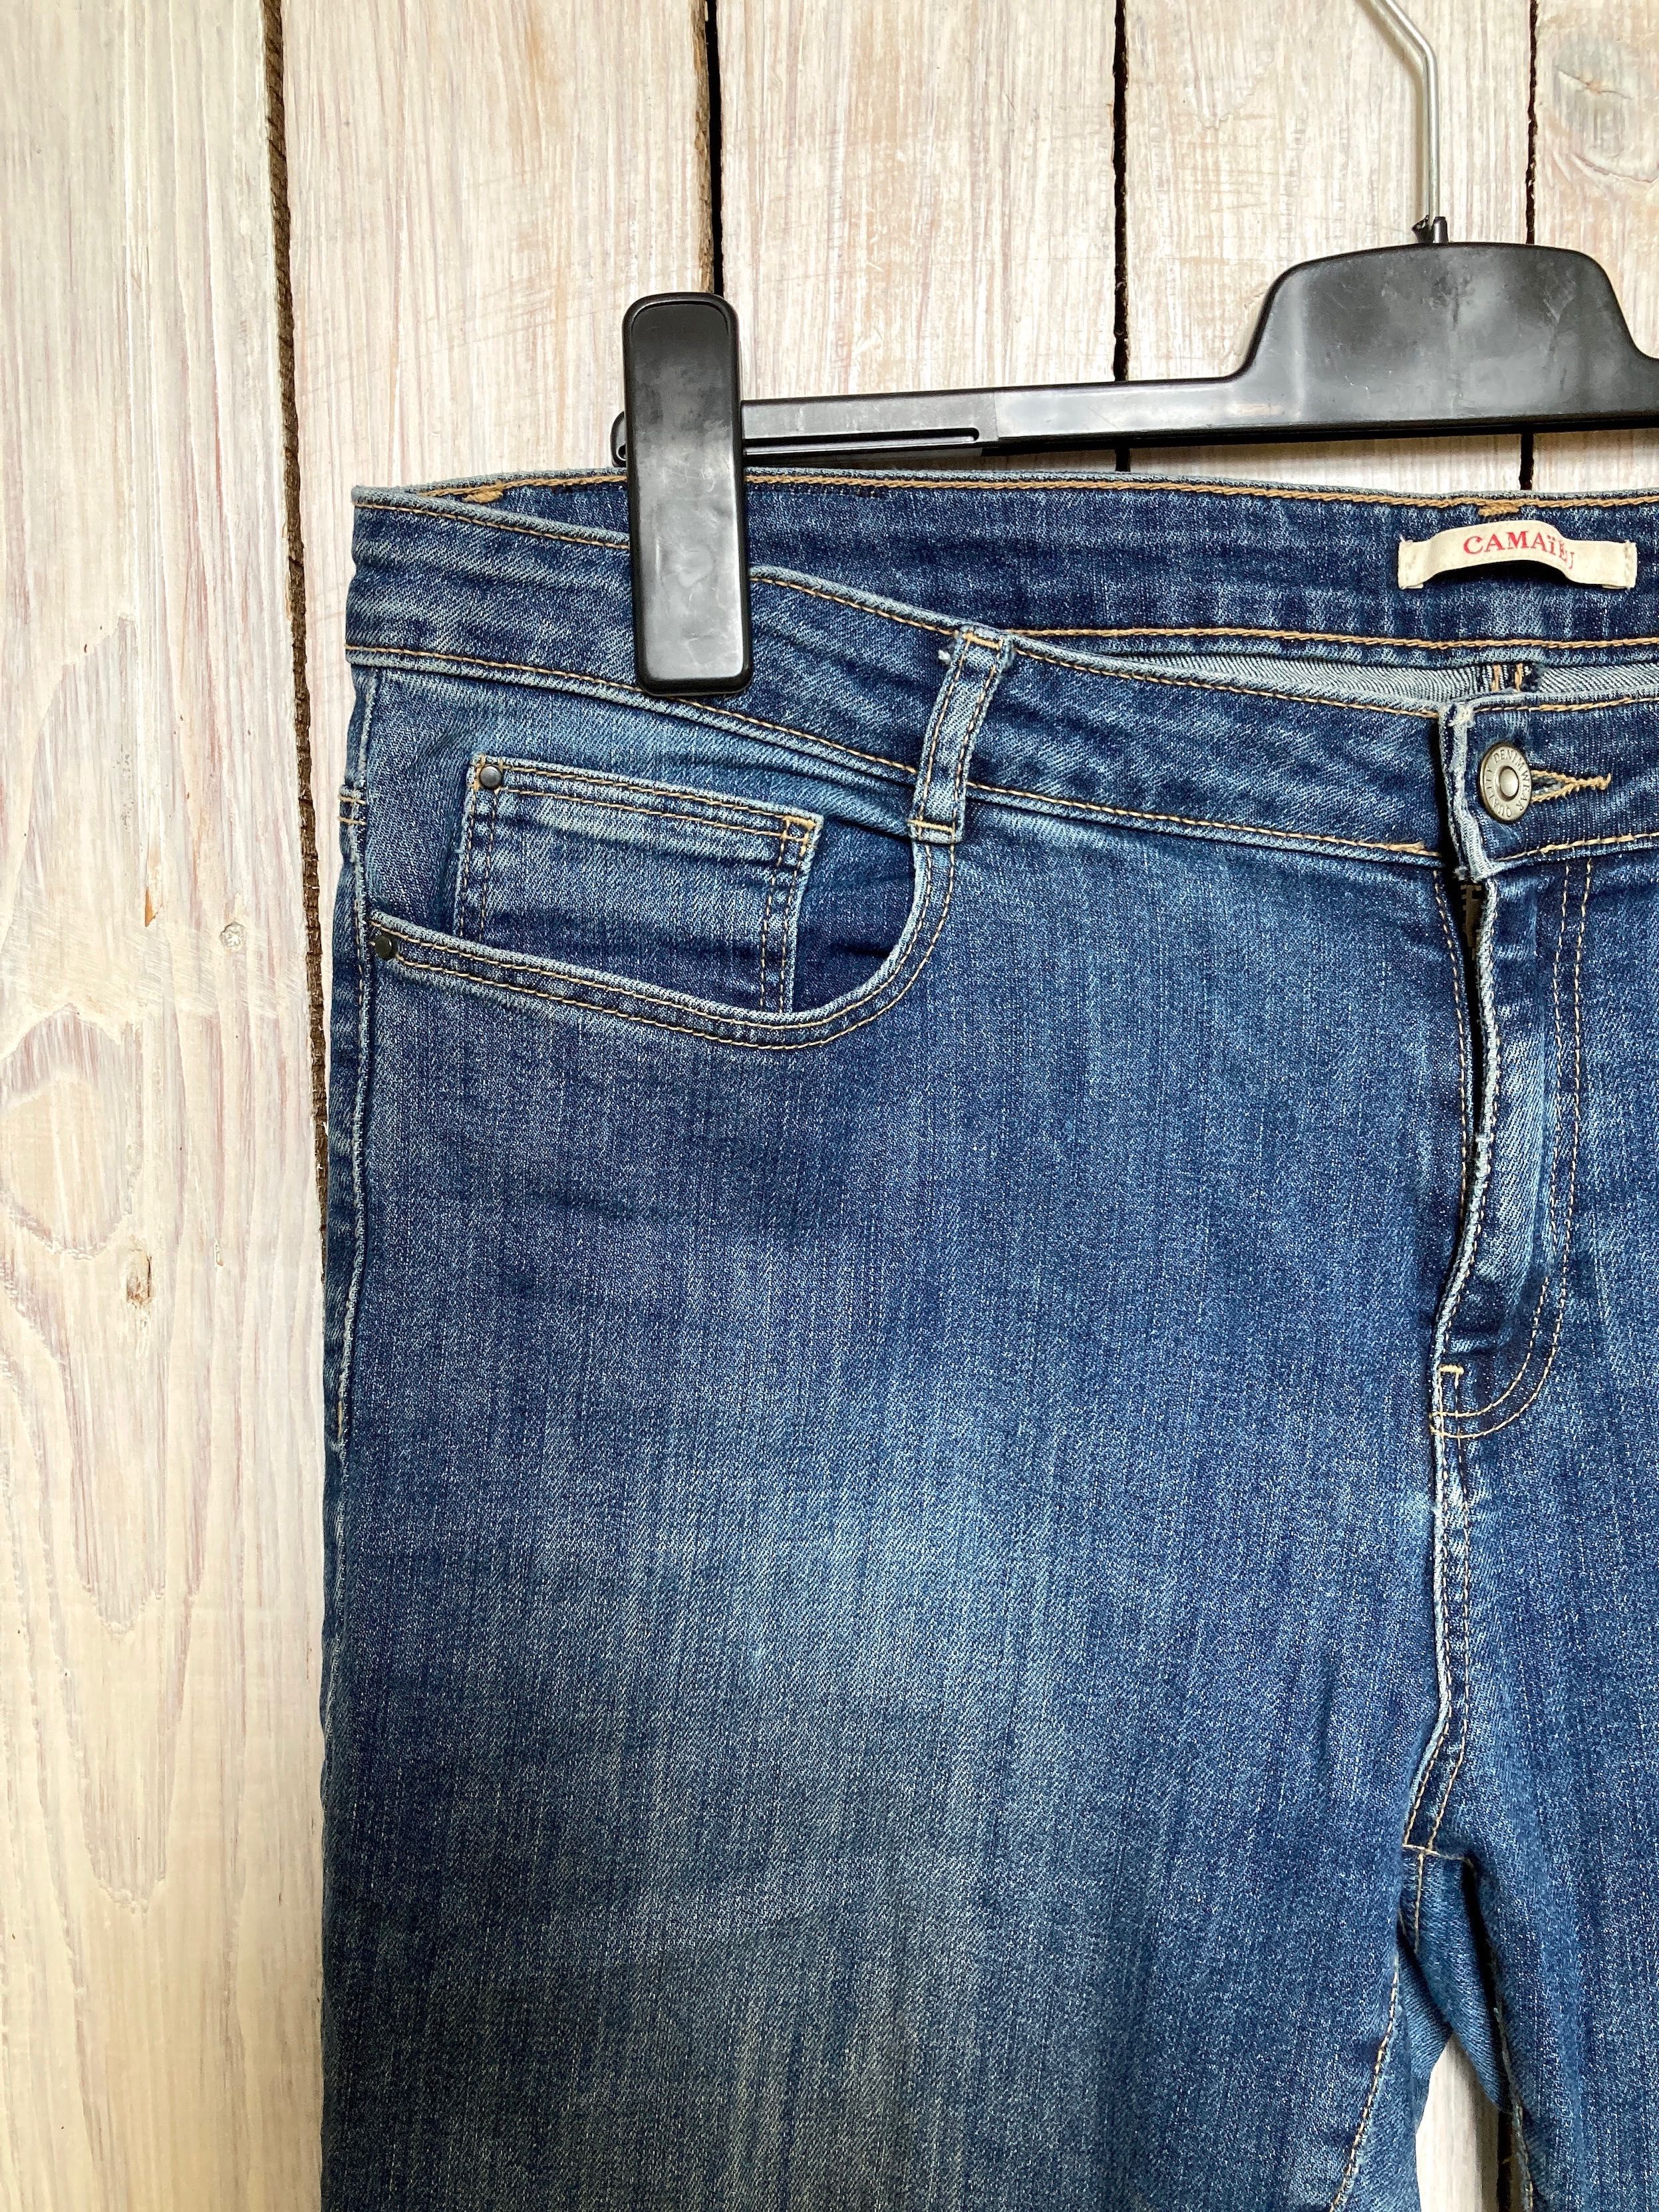 Spodnie Camaïeu damskie jeans 46 (UK18), Denim